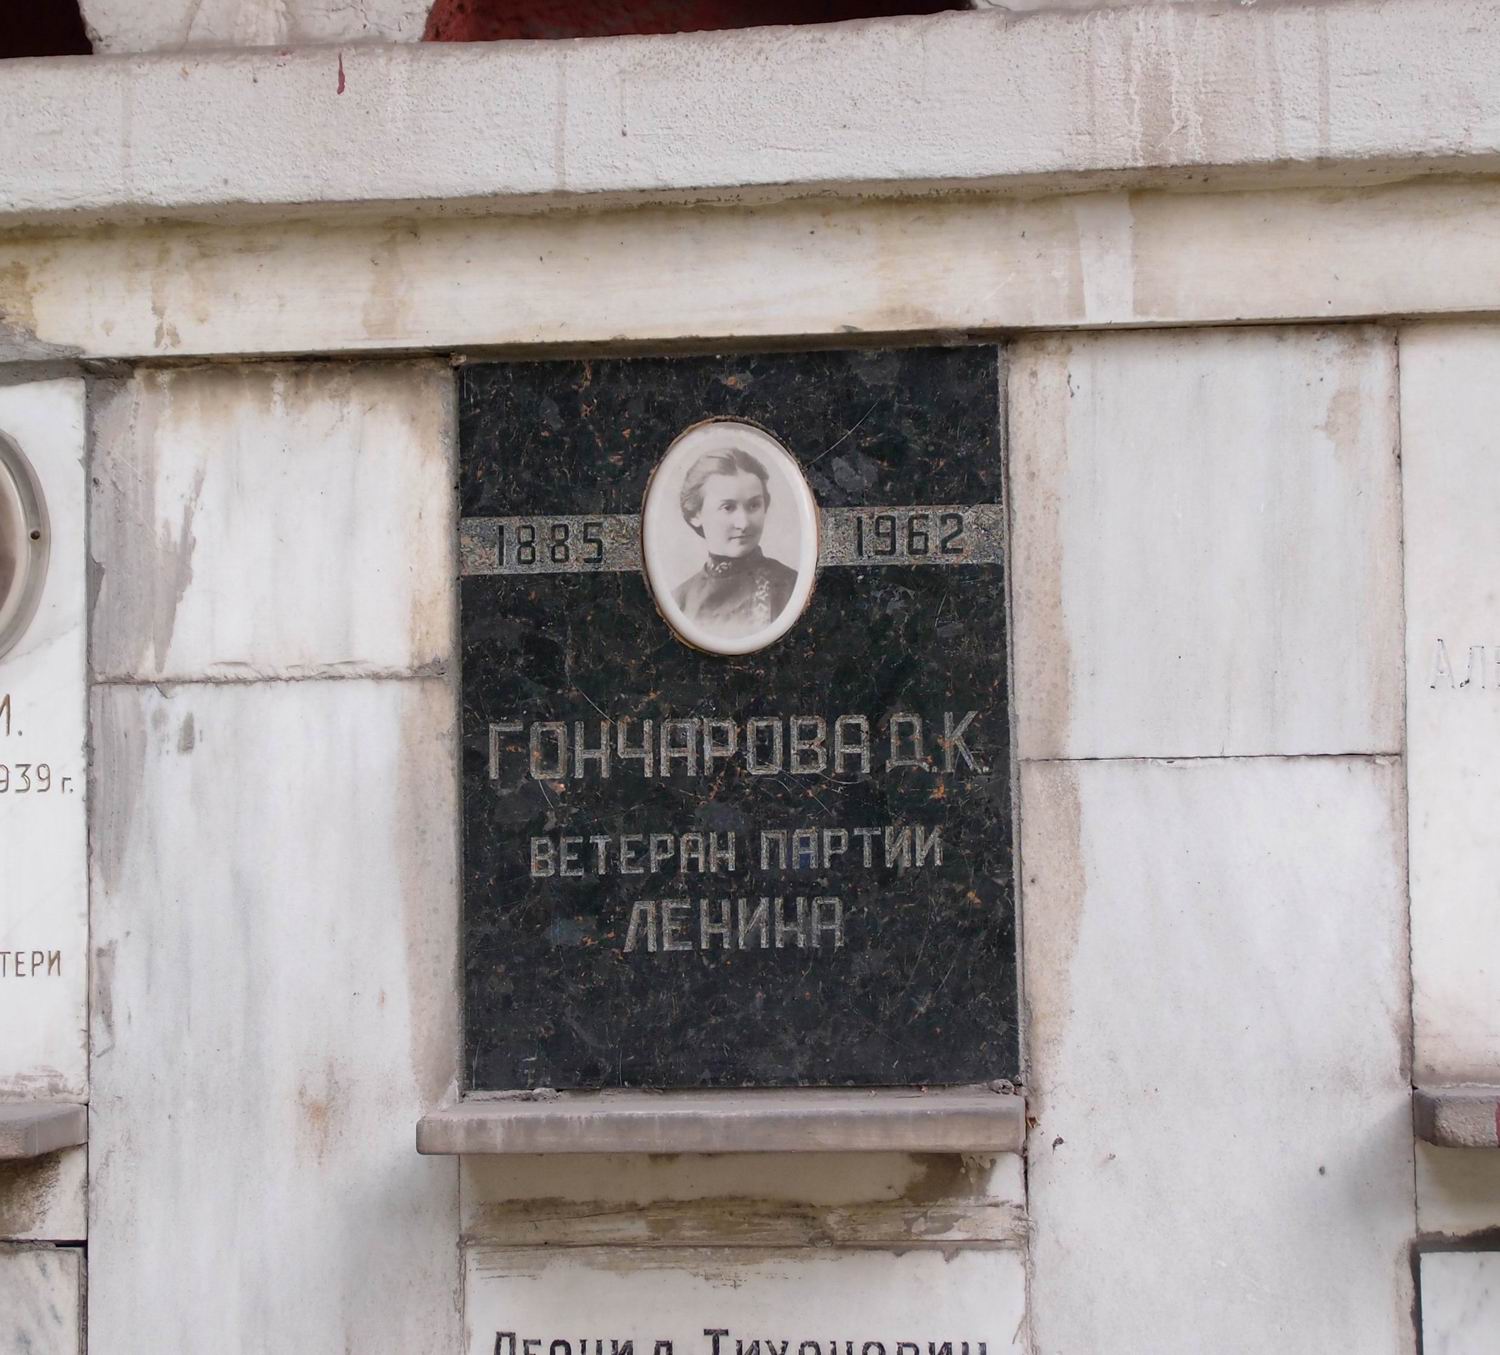 Плита на нише Гончаровой Д.К. (1885–1962), на Новодевичьем кладбище (колумбарий [92]–2–1).